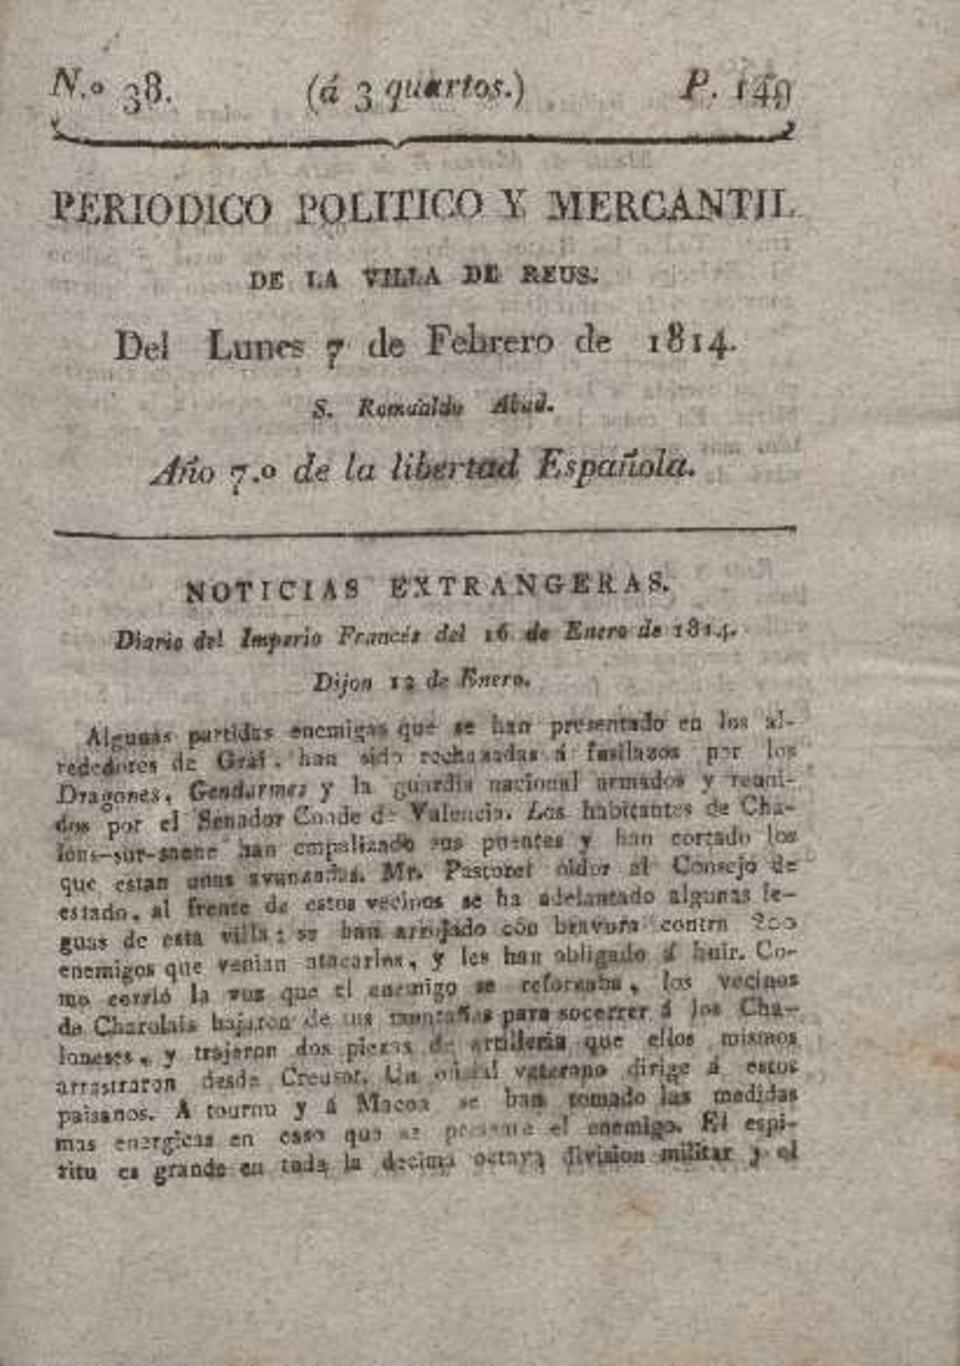 Periódico Político y Mercantil, #38, 7/2/1814 [Issue]